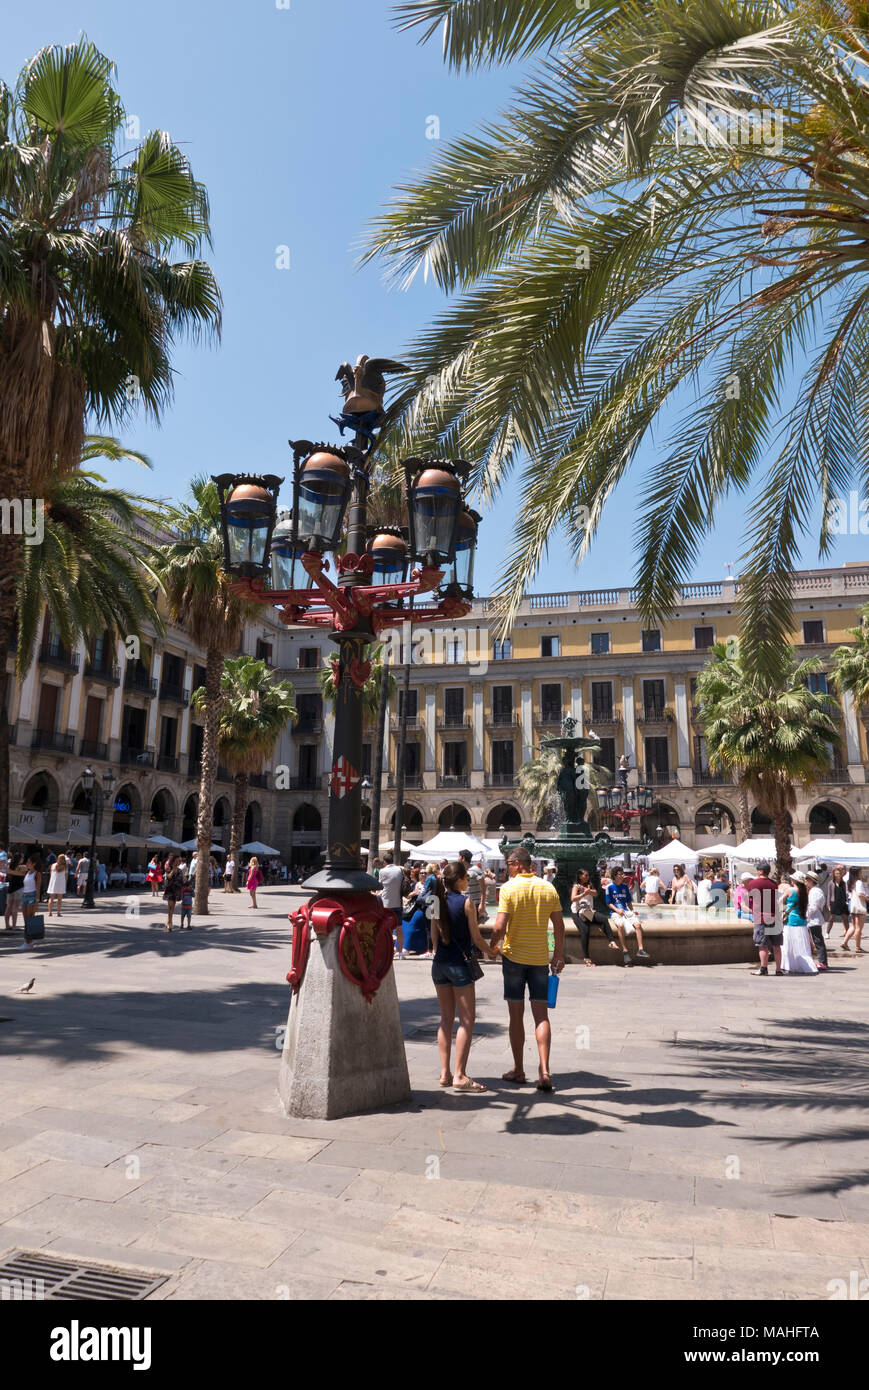 Antoni Gaudi Lamp post in Placa Reial, Barcelona, Spain. Stock Photo